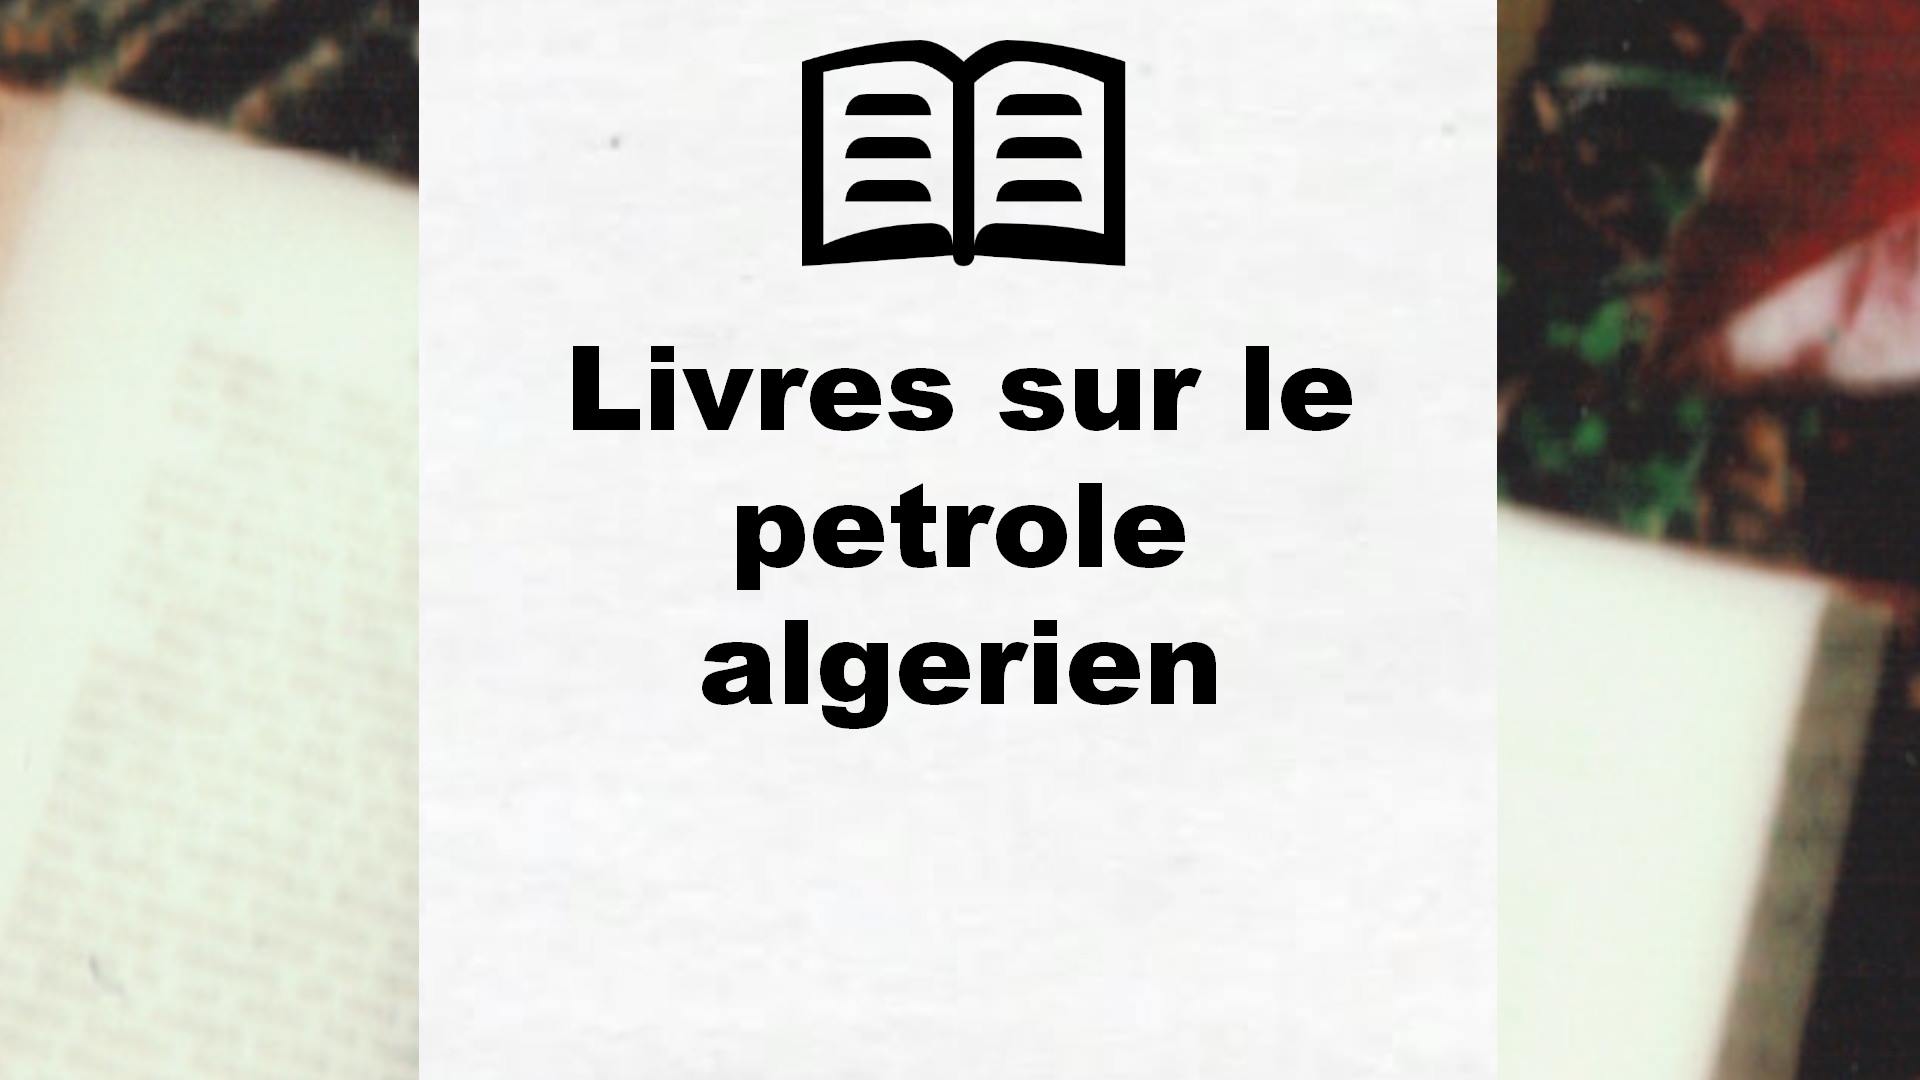 Livres sur le petrole algerien